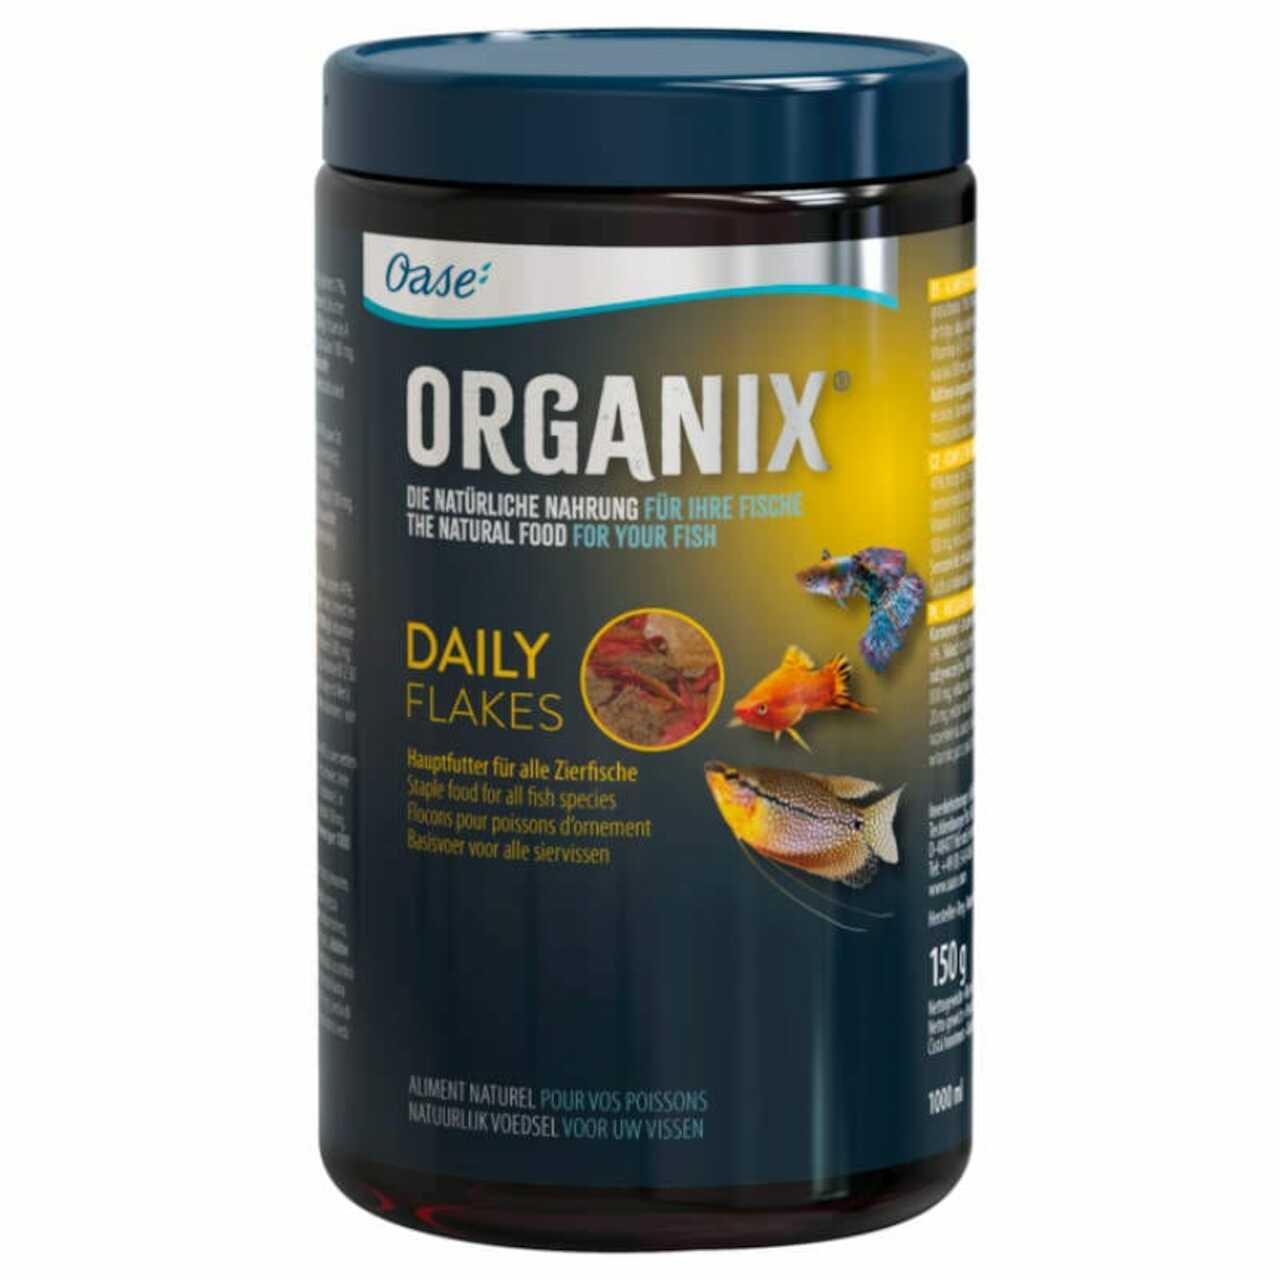 Oase Organix Daily Flakes